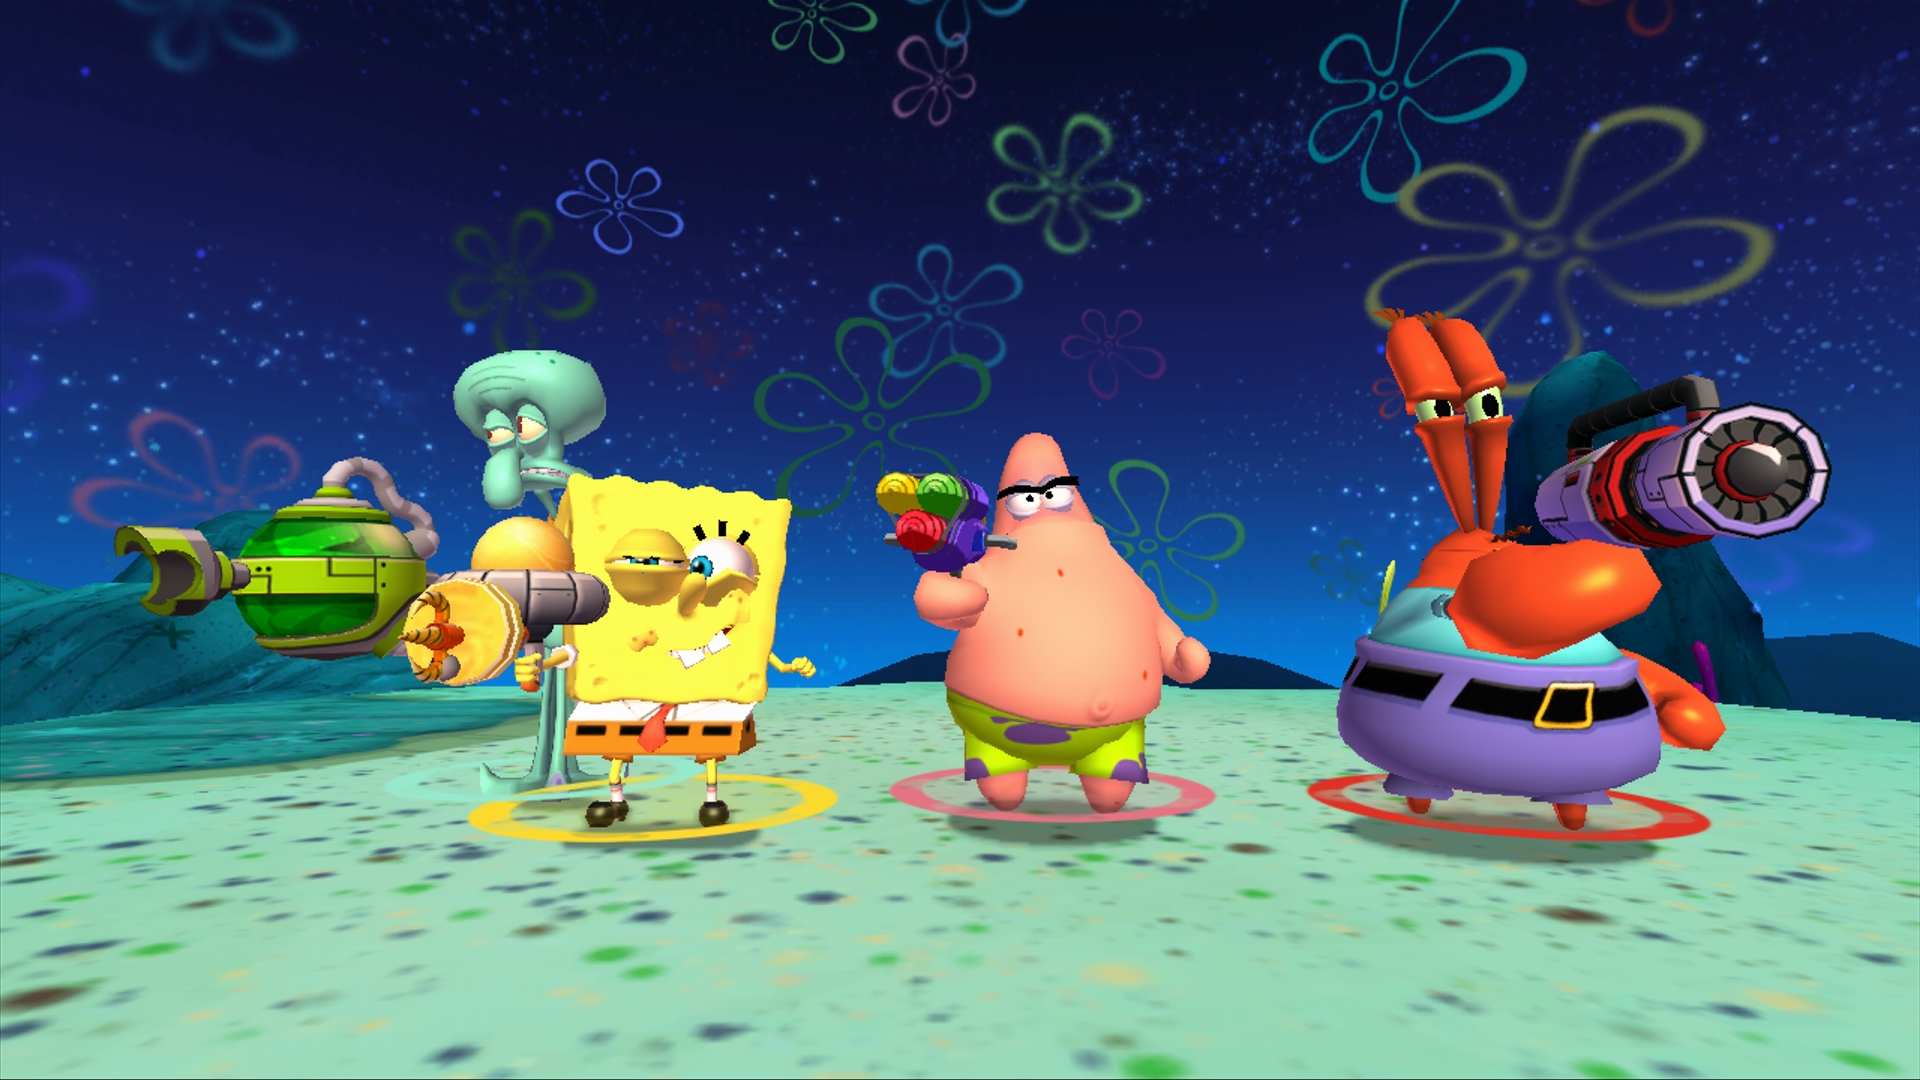 Spongebob Desktop Backgrounds free download 